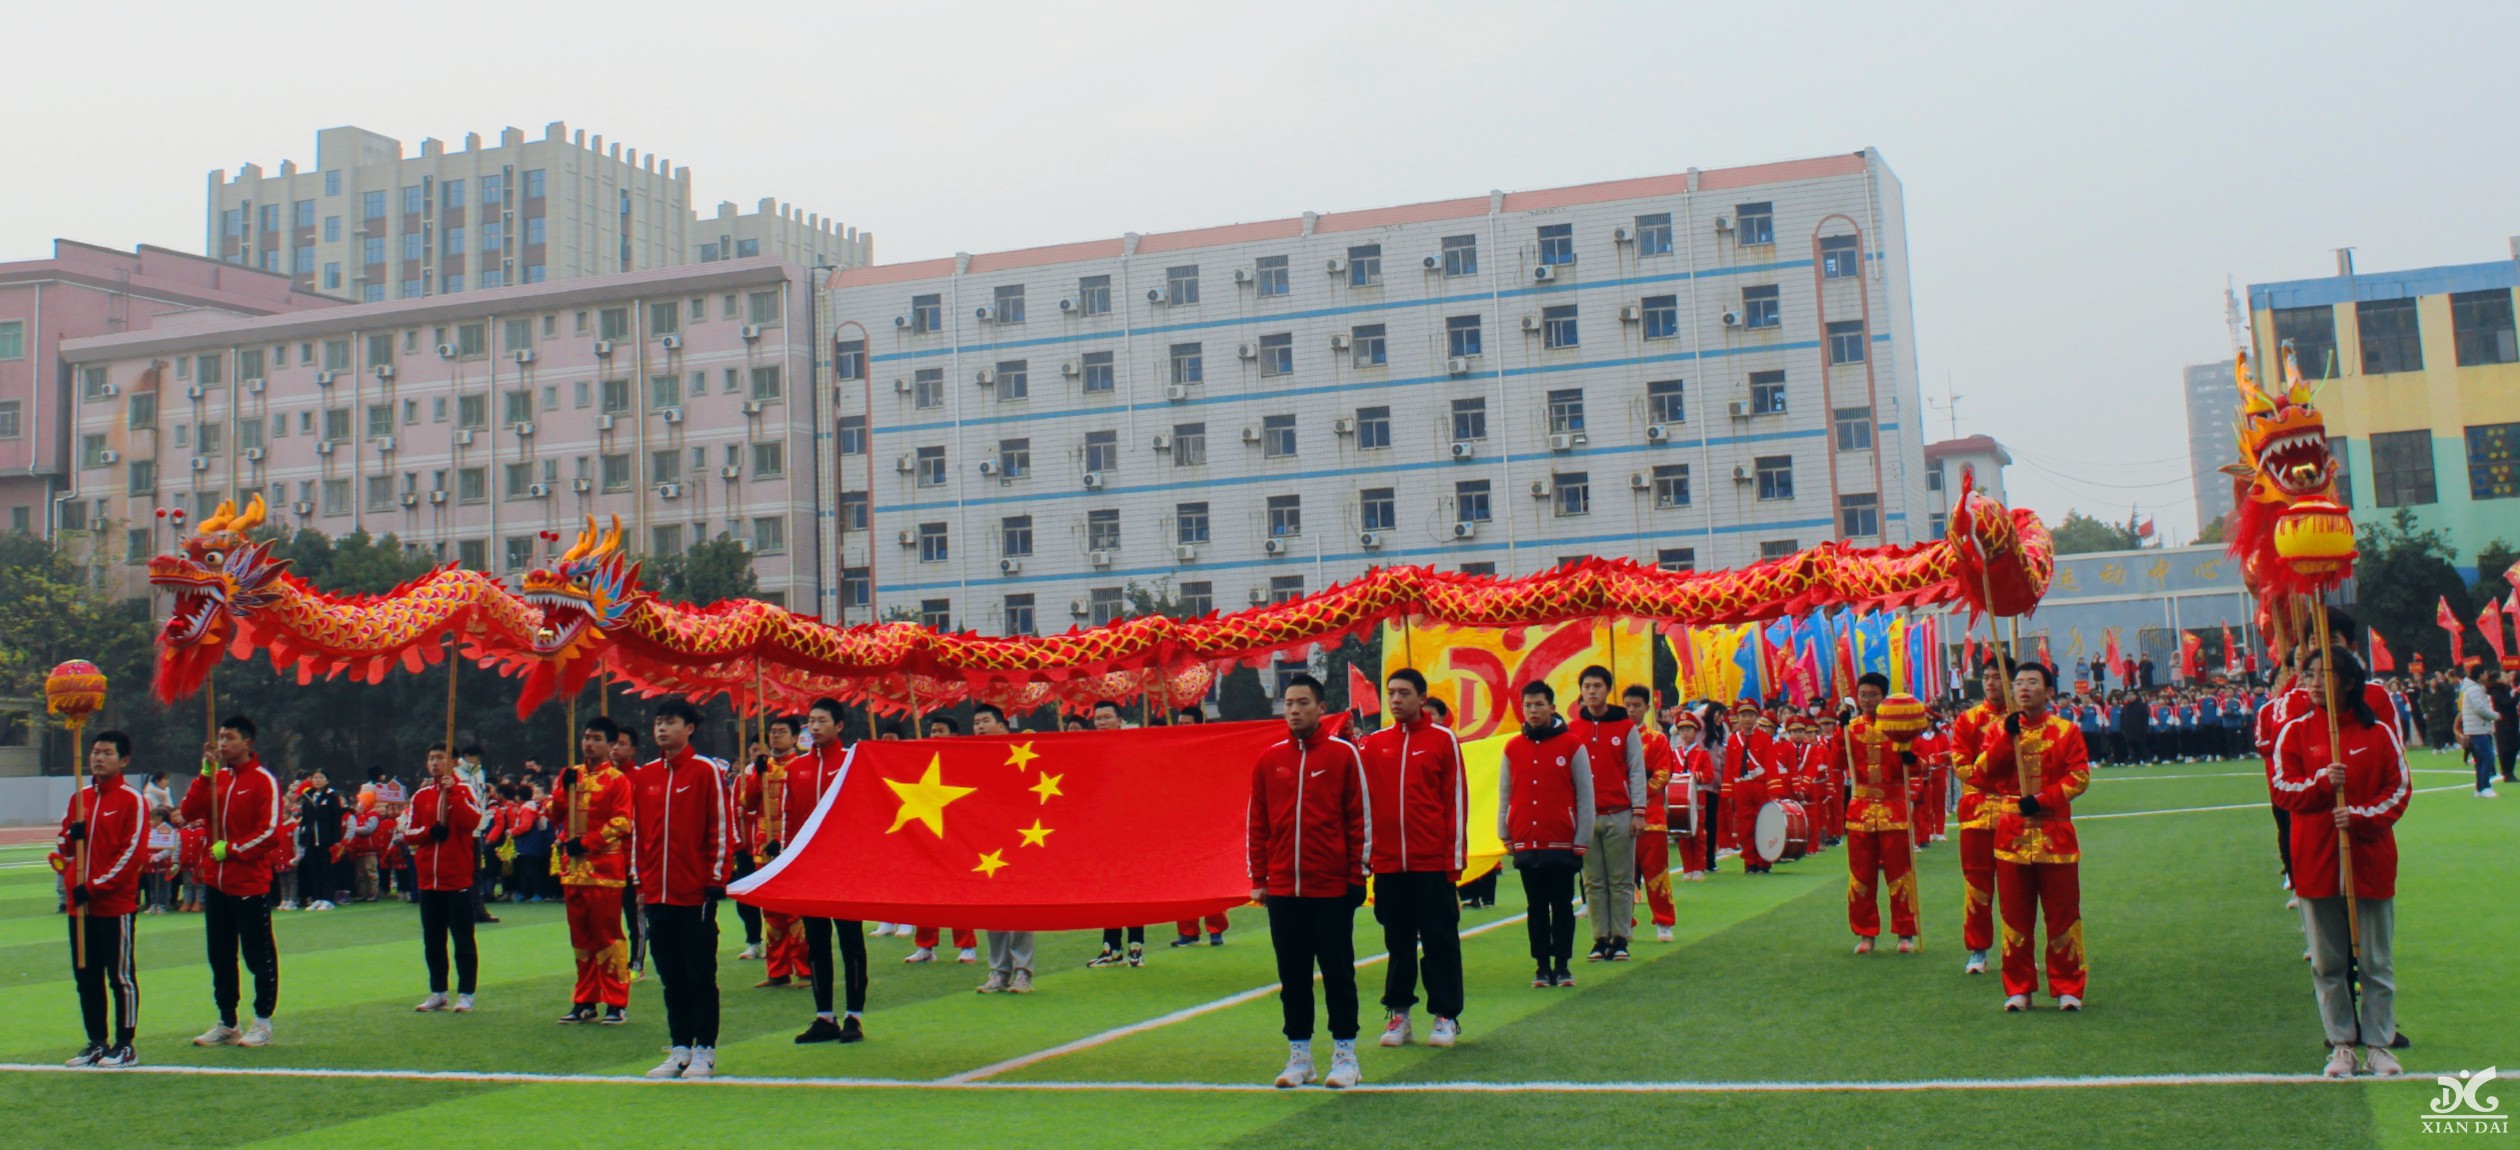 超燃15S，带你速览南昌现代外国语学校第22届运动会开幕式！